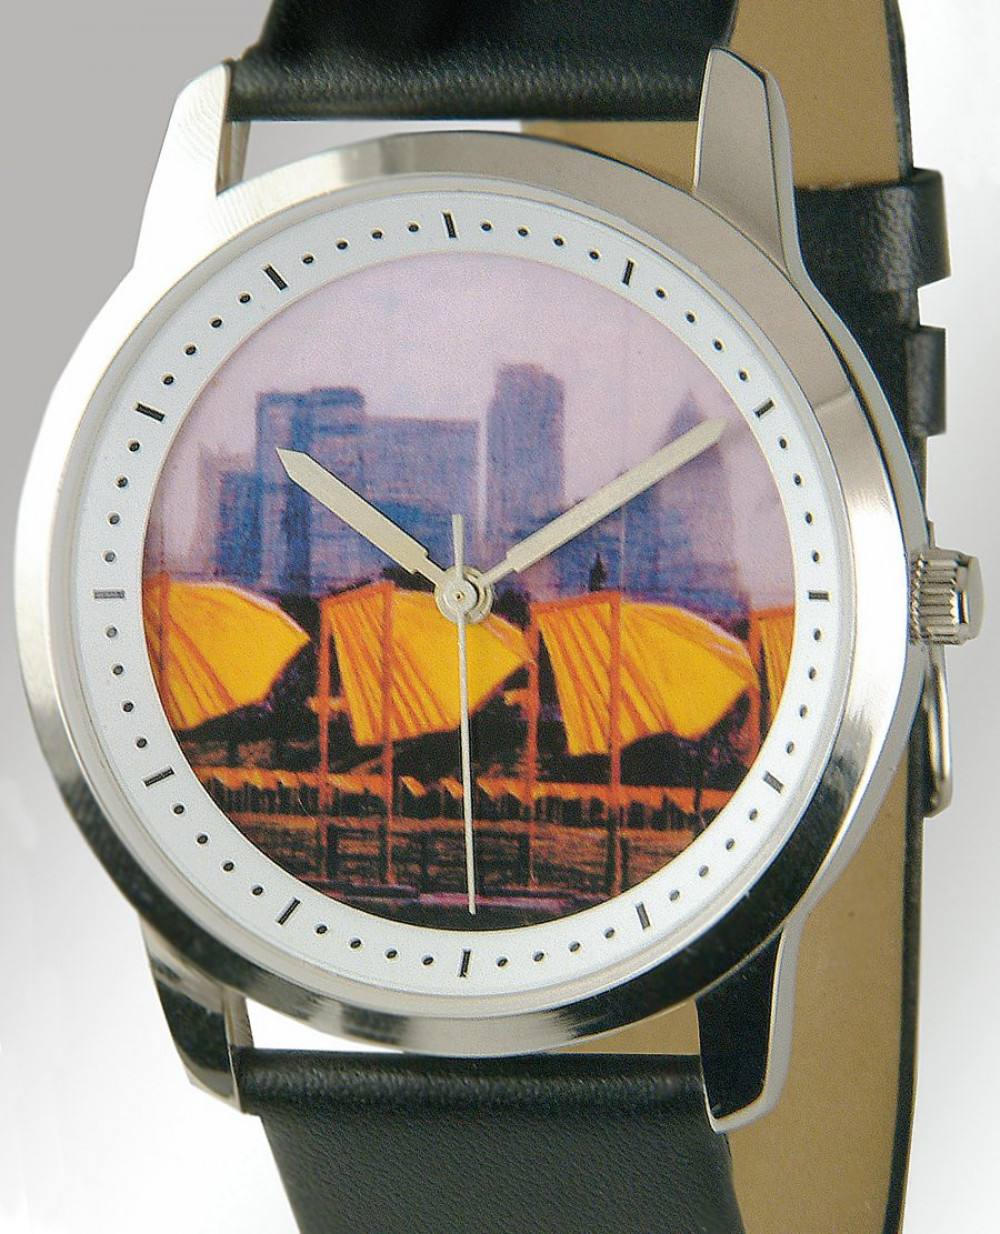 Zegarek firmy Silhouette Schmuck Bentner, model The Gates Regular